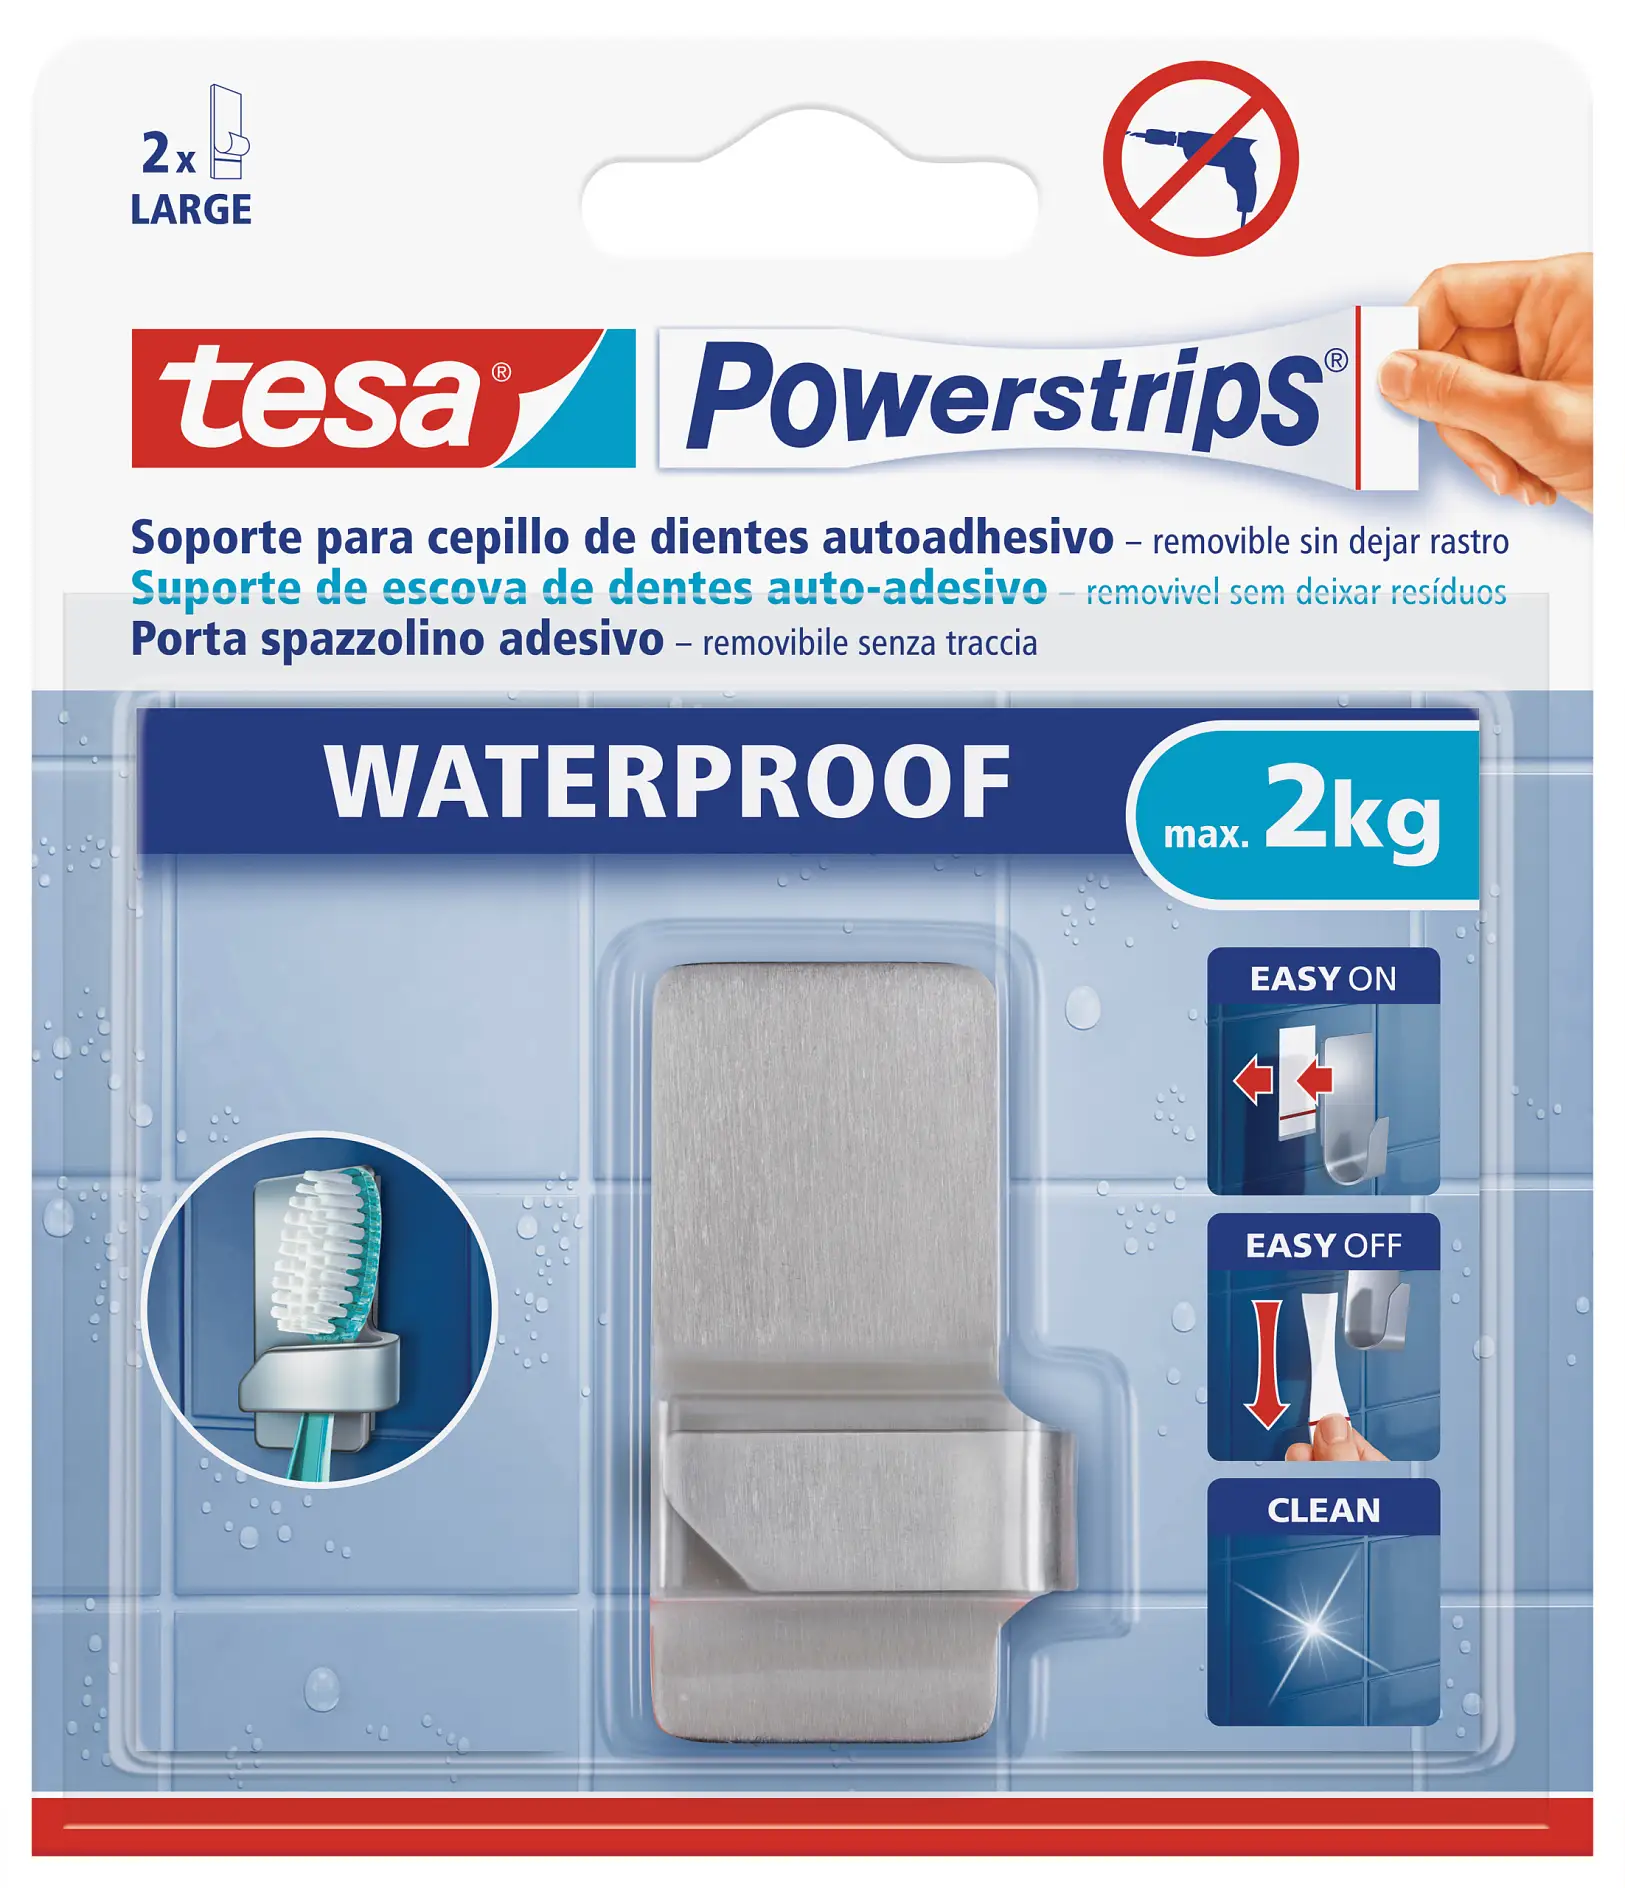 tesa Powerstrips waterproof toothbrush holder zoom